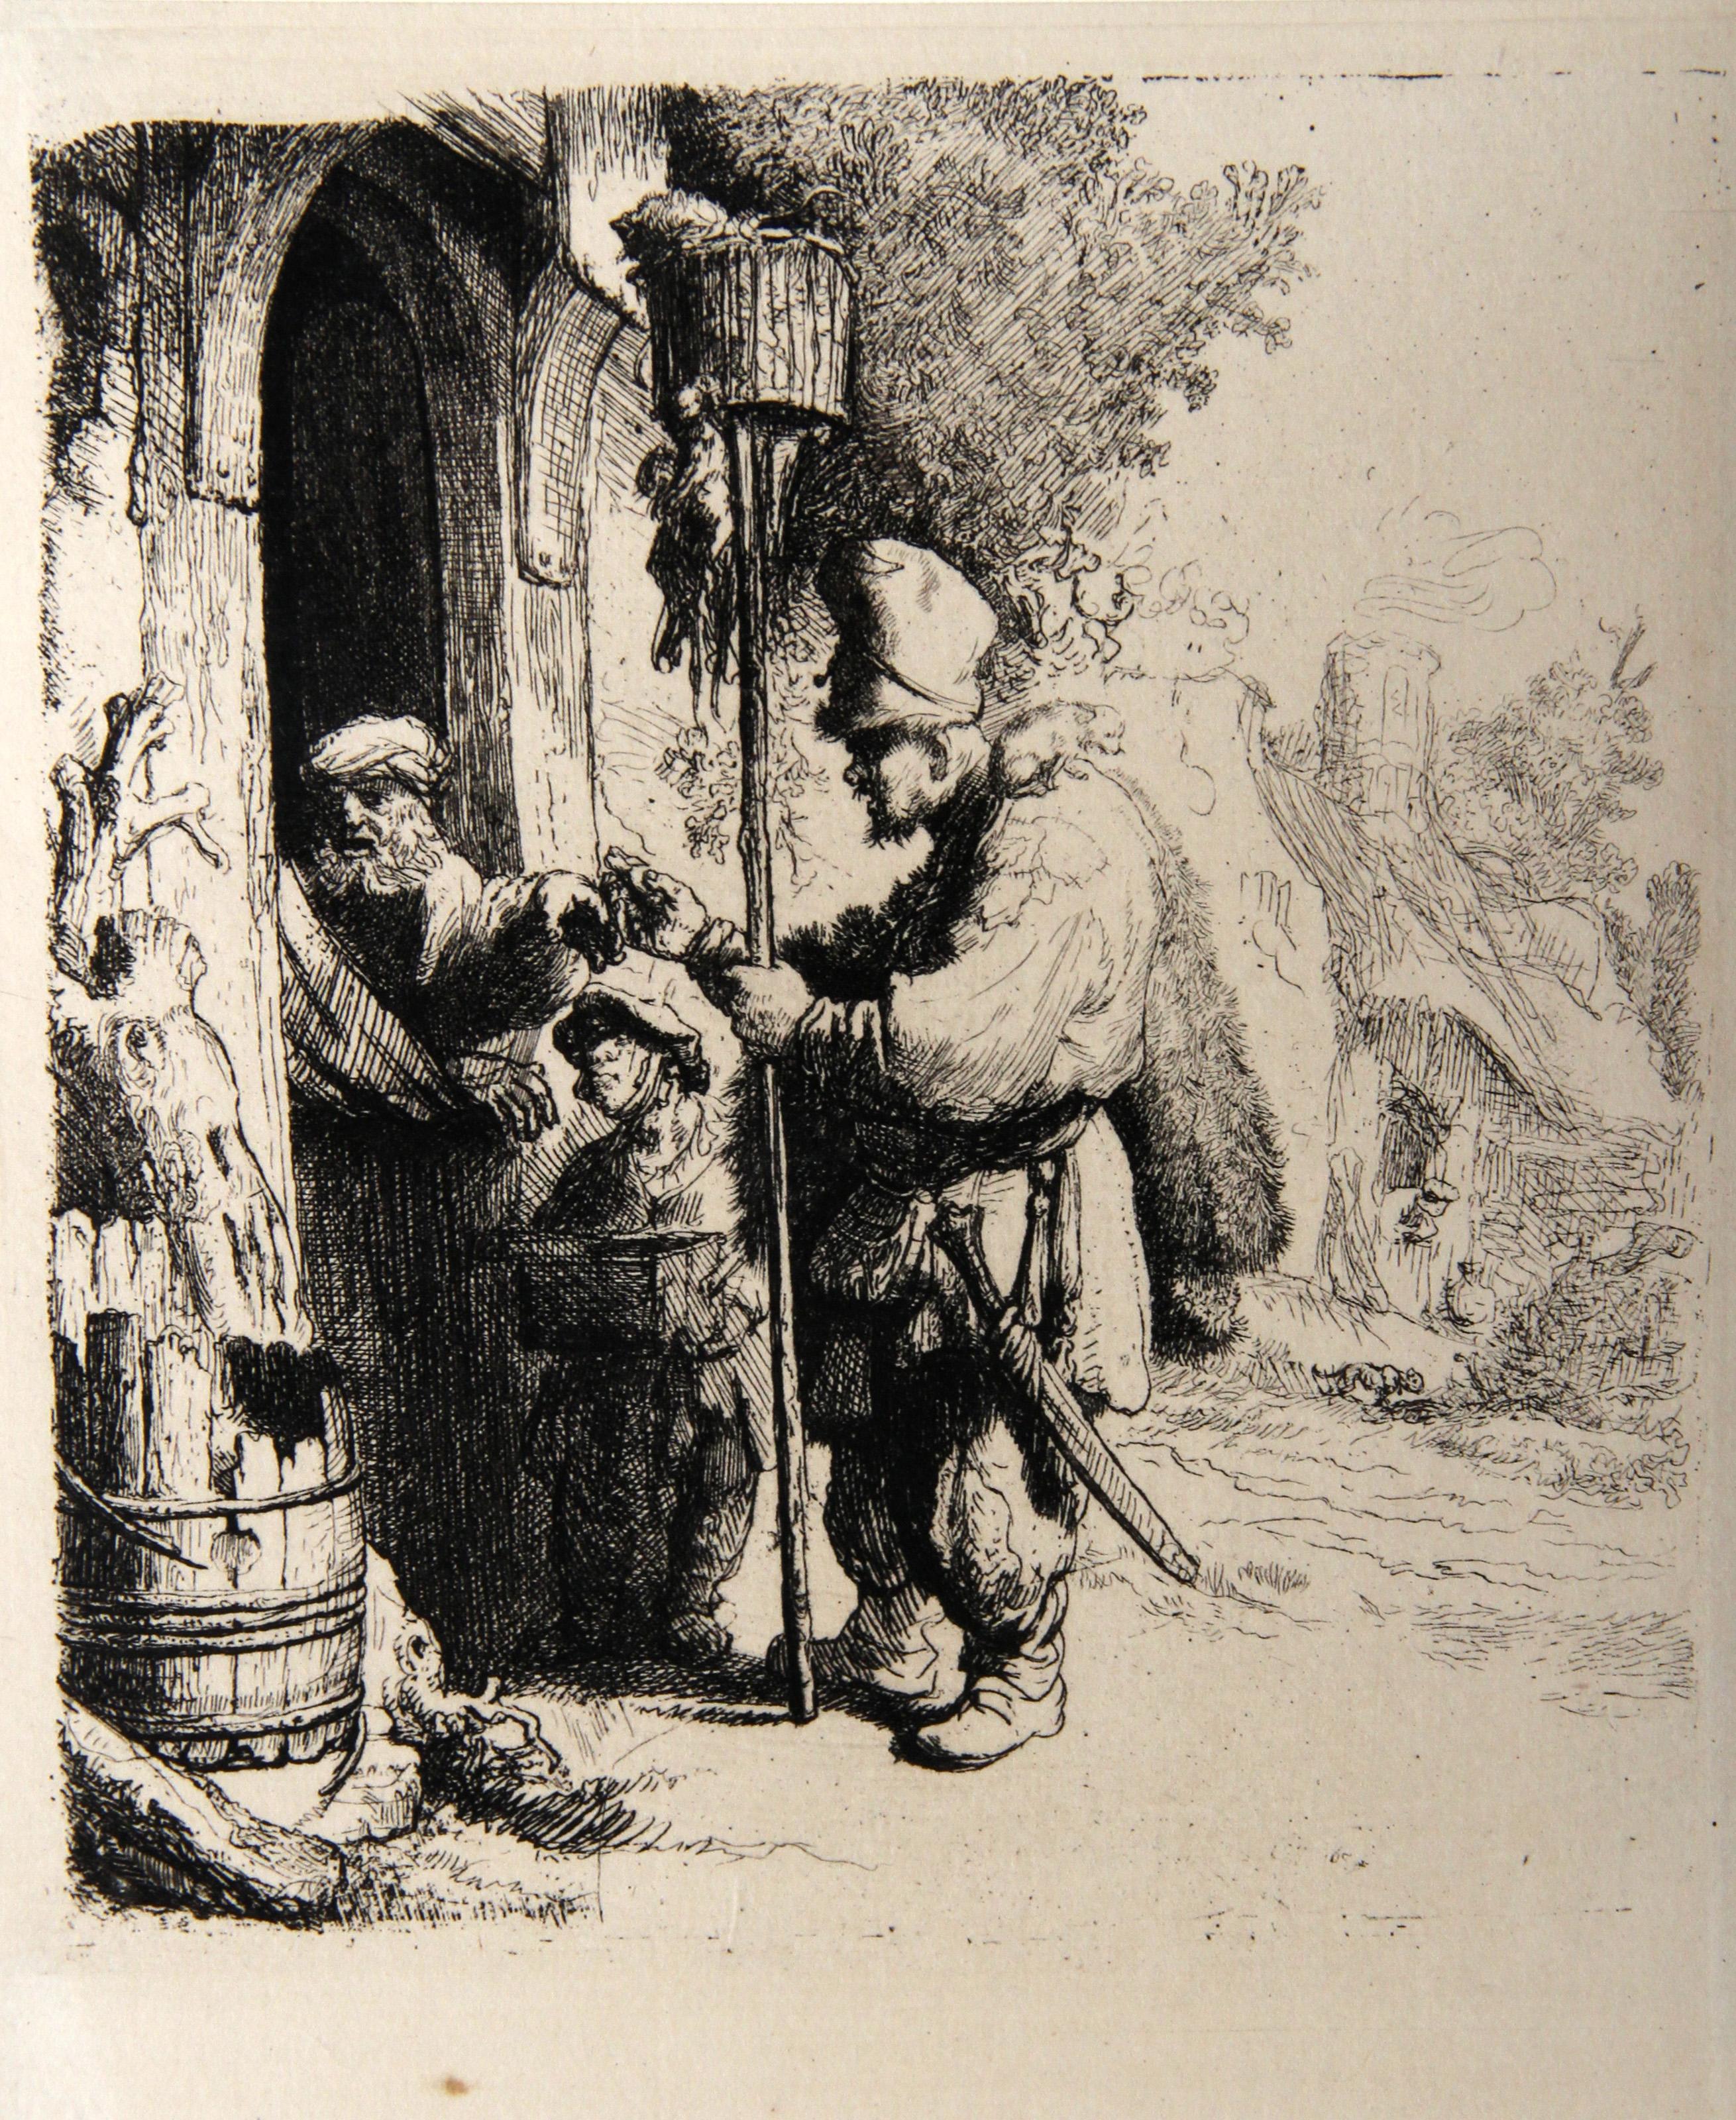  Rembrandt van Rijn, Nach Amand Durand, Niederländer (1606 - 1669) - Le Marchand de Mort aux Rats (B121), Jahr: 1878 (von Original 1632), Medium: Heliogravüre, Größe: 5.5  x 5 in. (13.97  x 12,7 cm), Drucker: Amand Durand, Beschreibung: Der